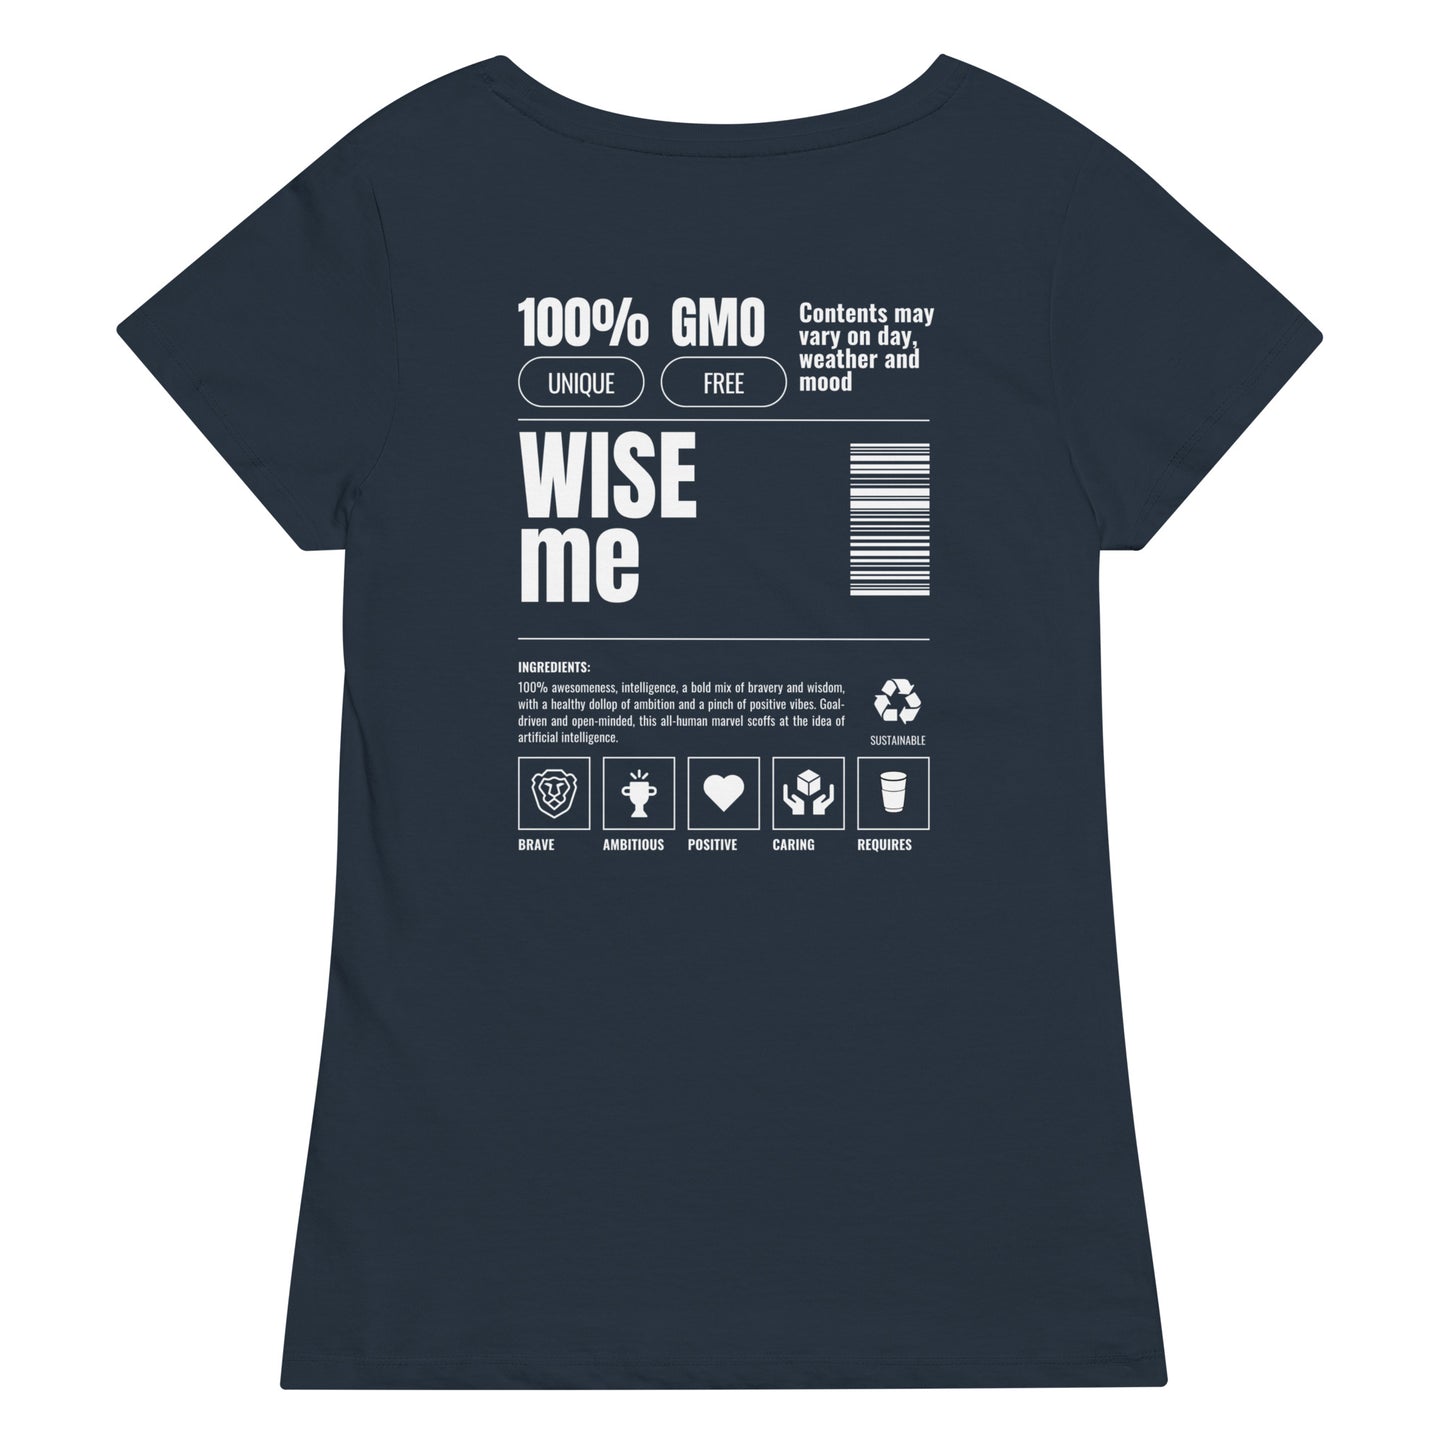 "WISE me ingridients" organic t-shirt